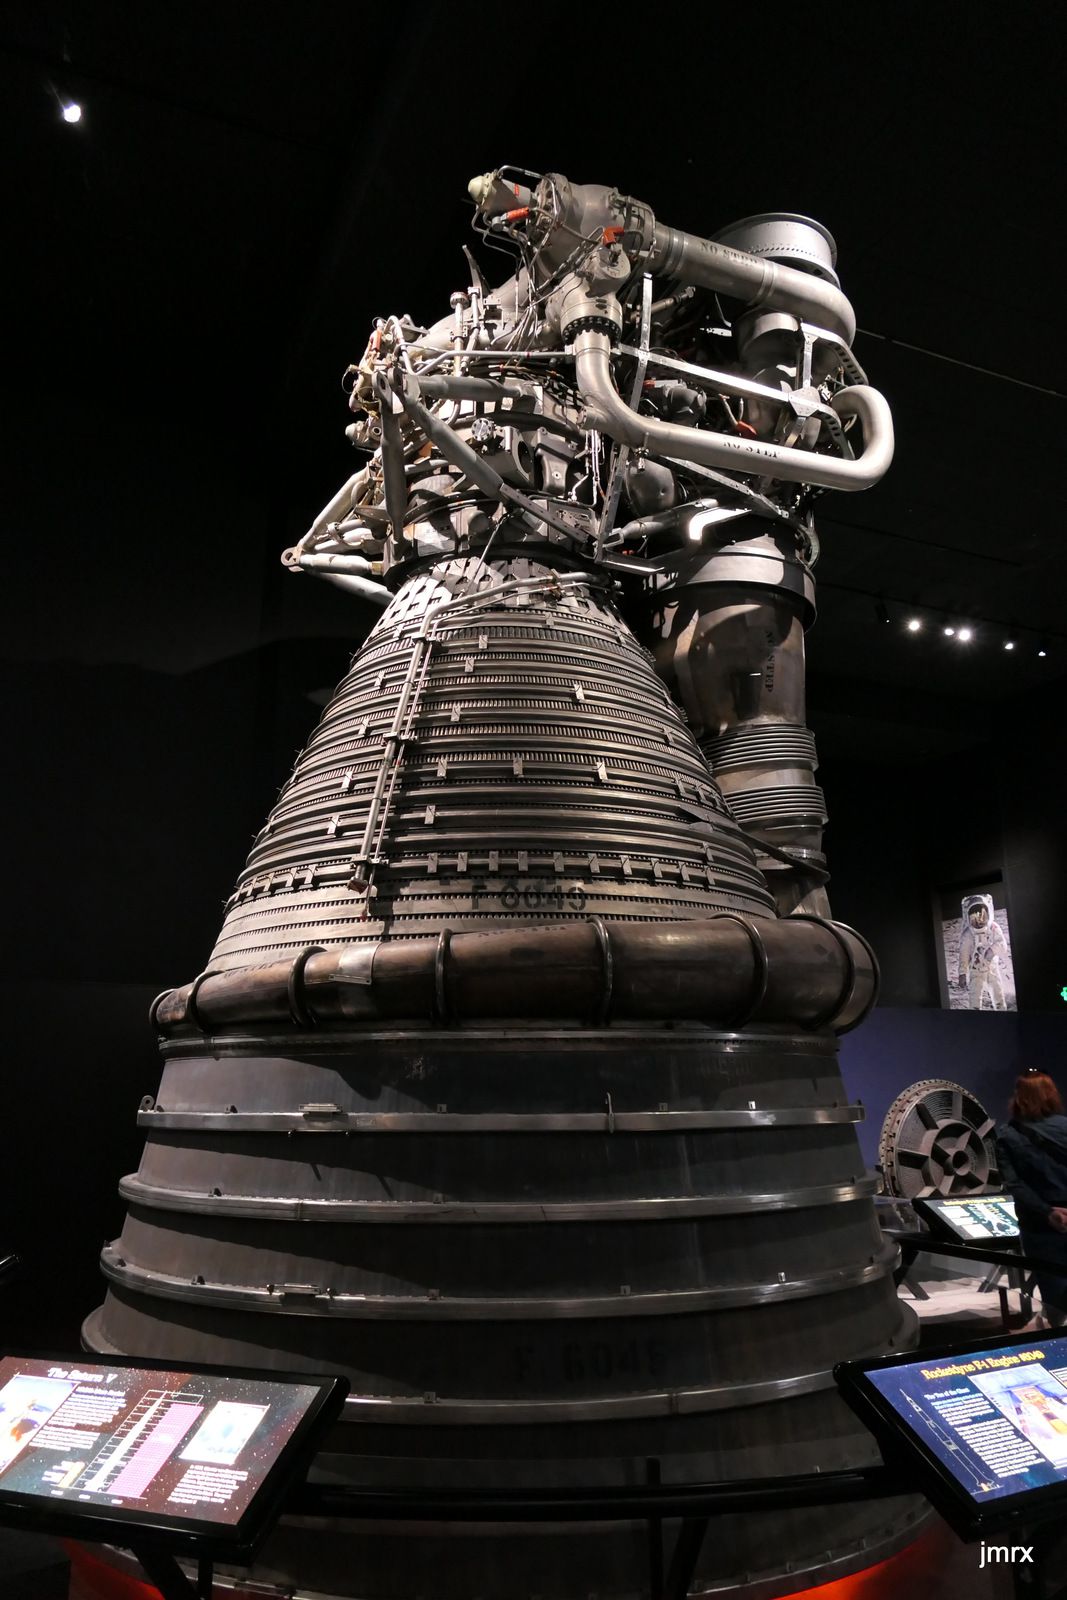 Un des monstrueux moteur de la fusée Saturn V. Le module de commande des missions Apollo pèse 6 tonnes alors que la fusée en fait 3000. C'est tout ce qui revenait sur terre soit 0.2% du poids total au décollage!